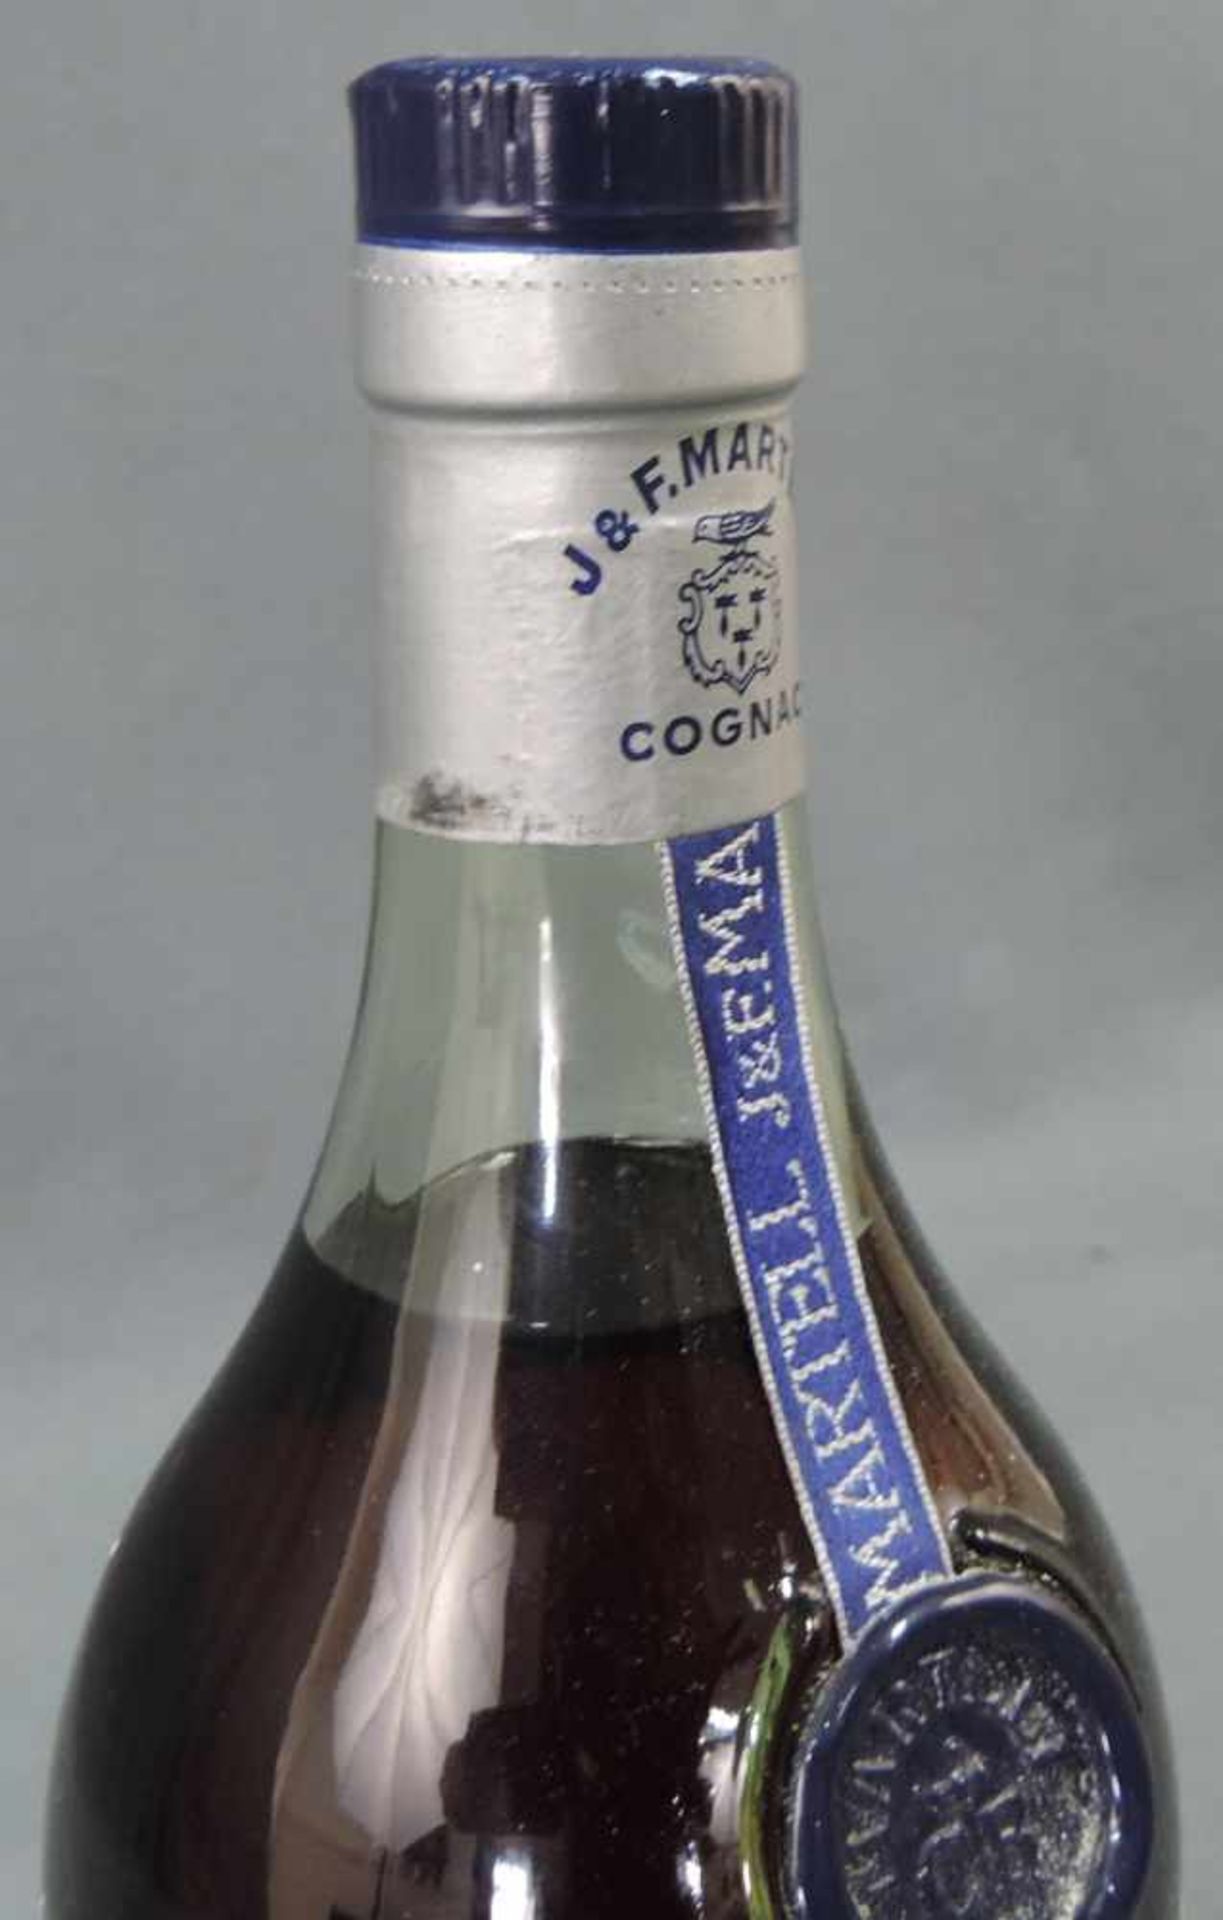 Martell Cognac Cordon Bleu. 1 Flasche 0,7 Liter. Circa 20 Jahre Kellergelagert. Frankreich. 40 % - Bild 2 aus 4